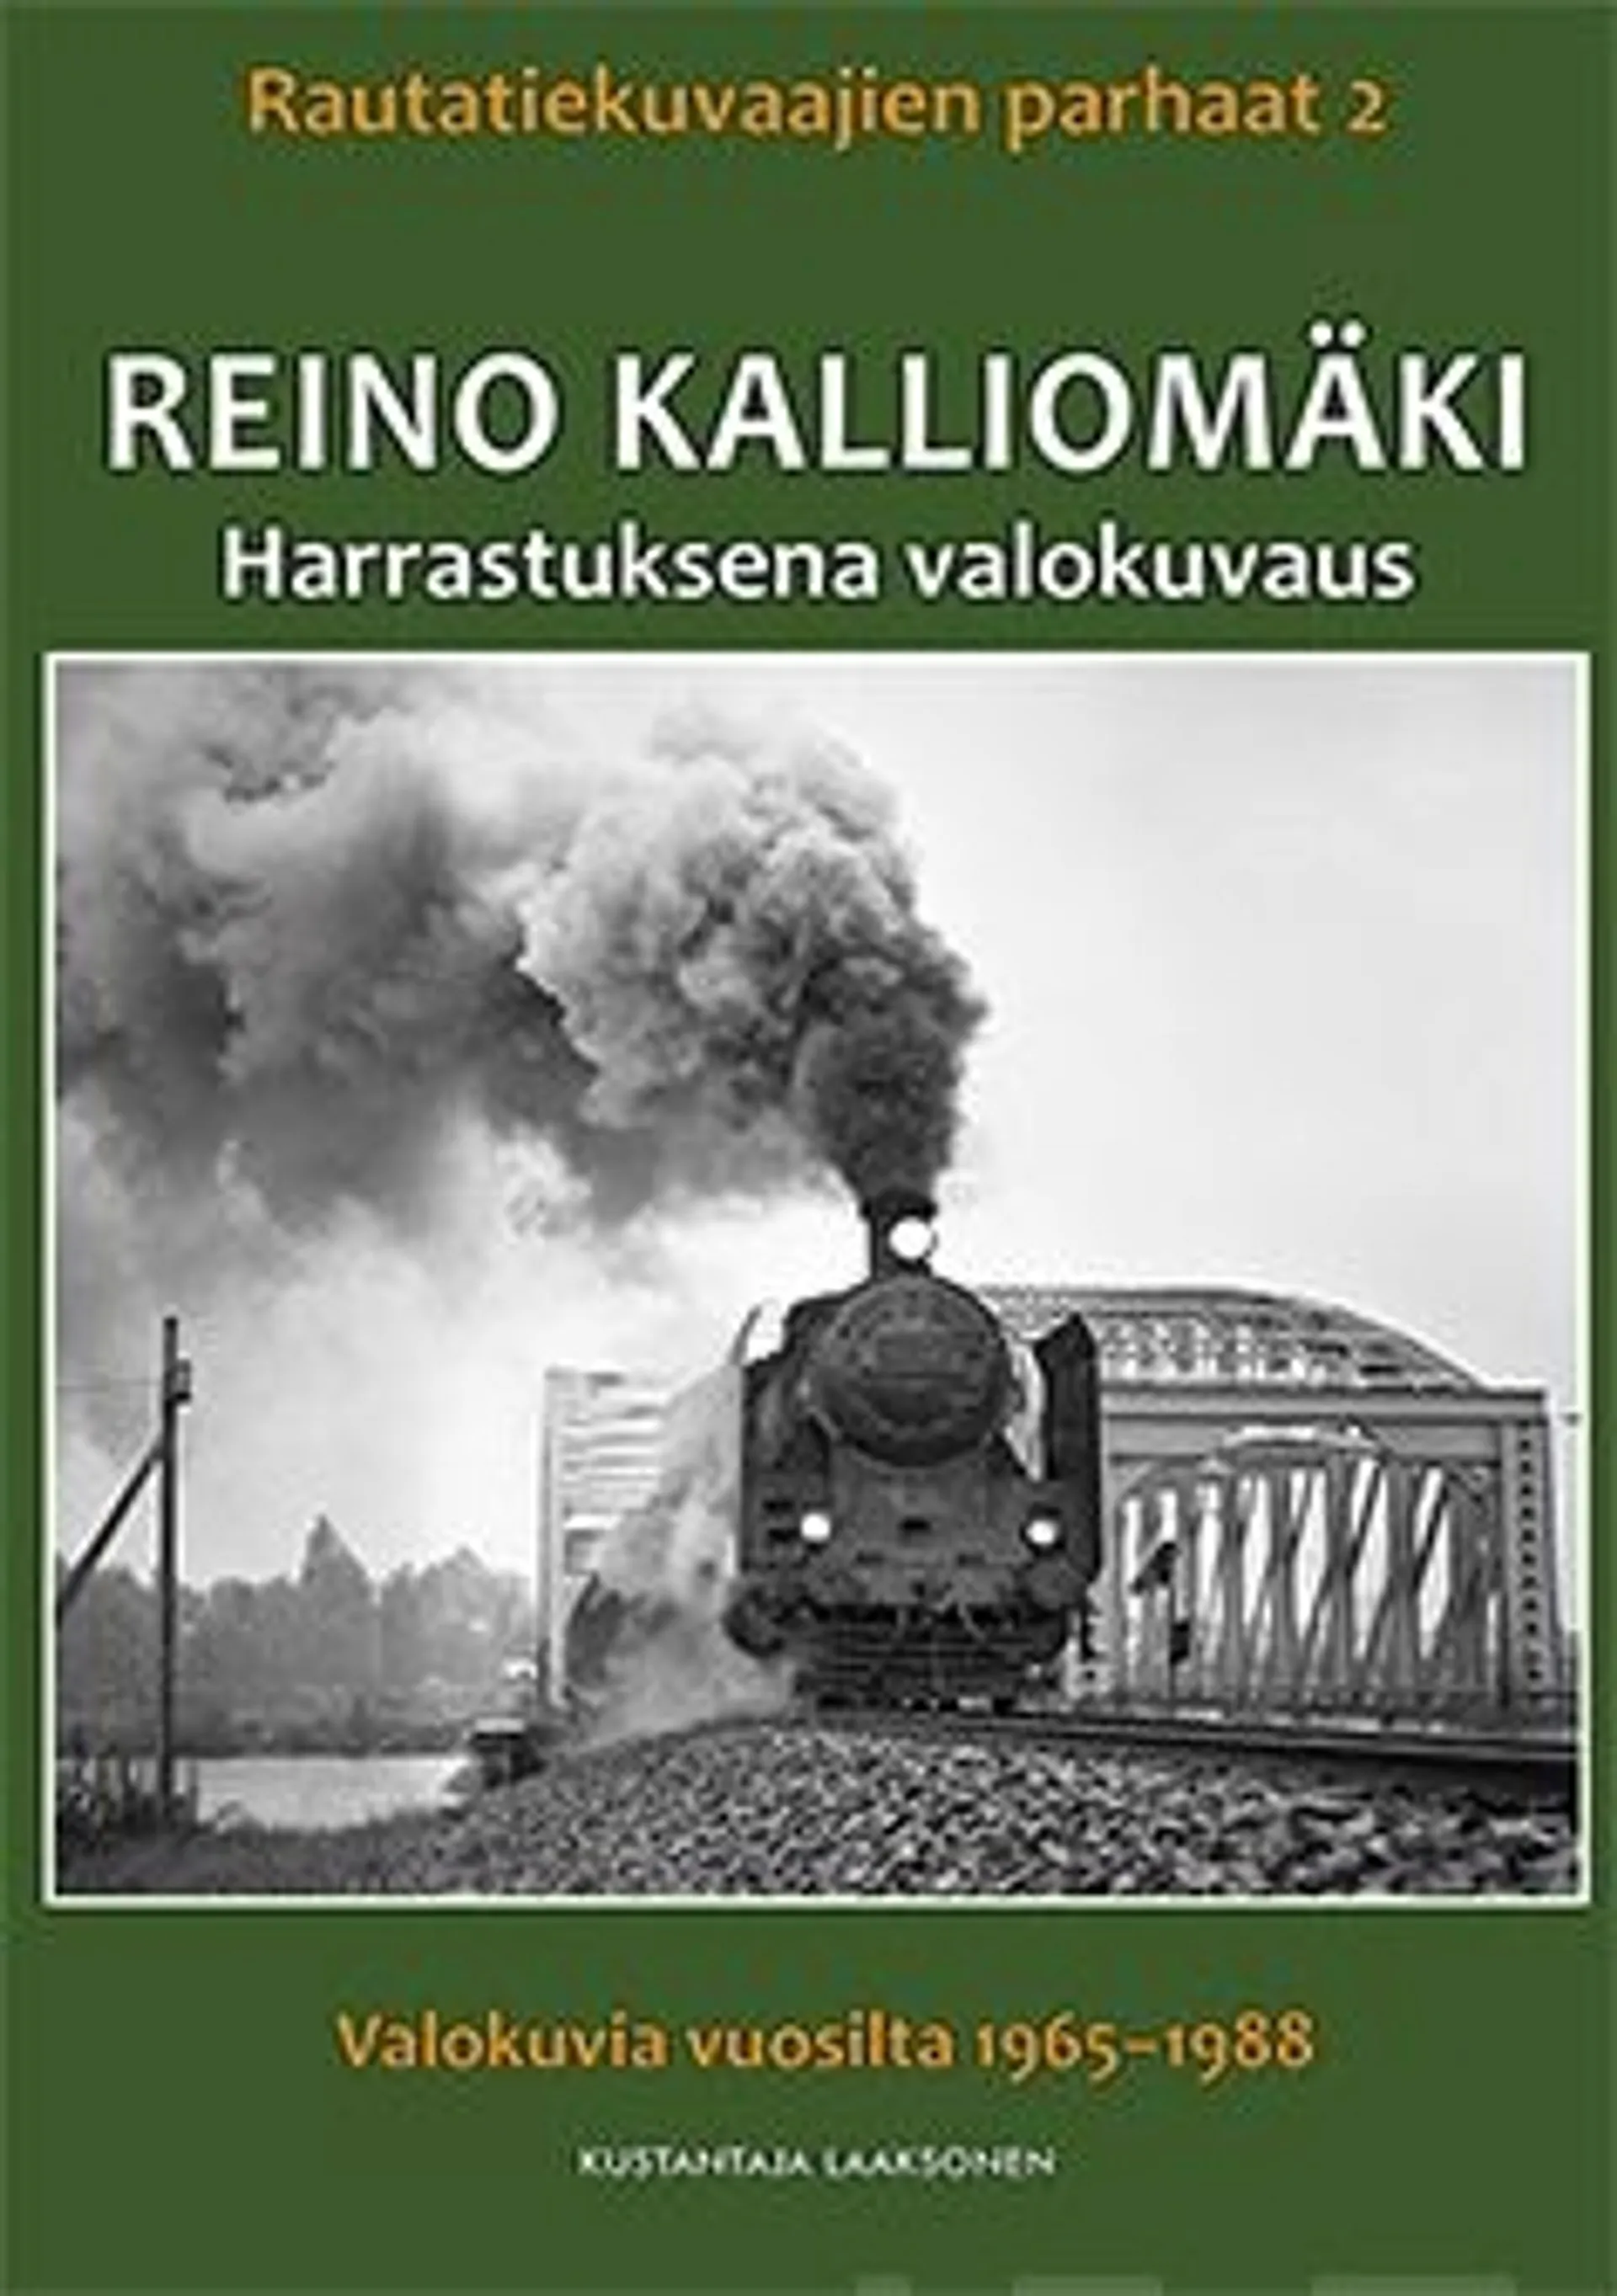 Reino Kalliomäki - Harrastuksena valokuvaus : Rautatiekuvaajien parhaat 2